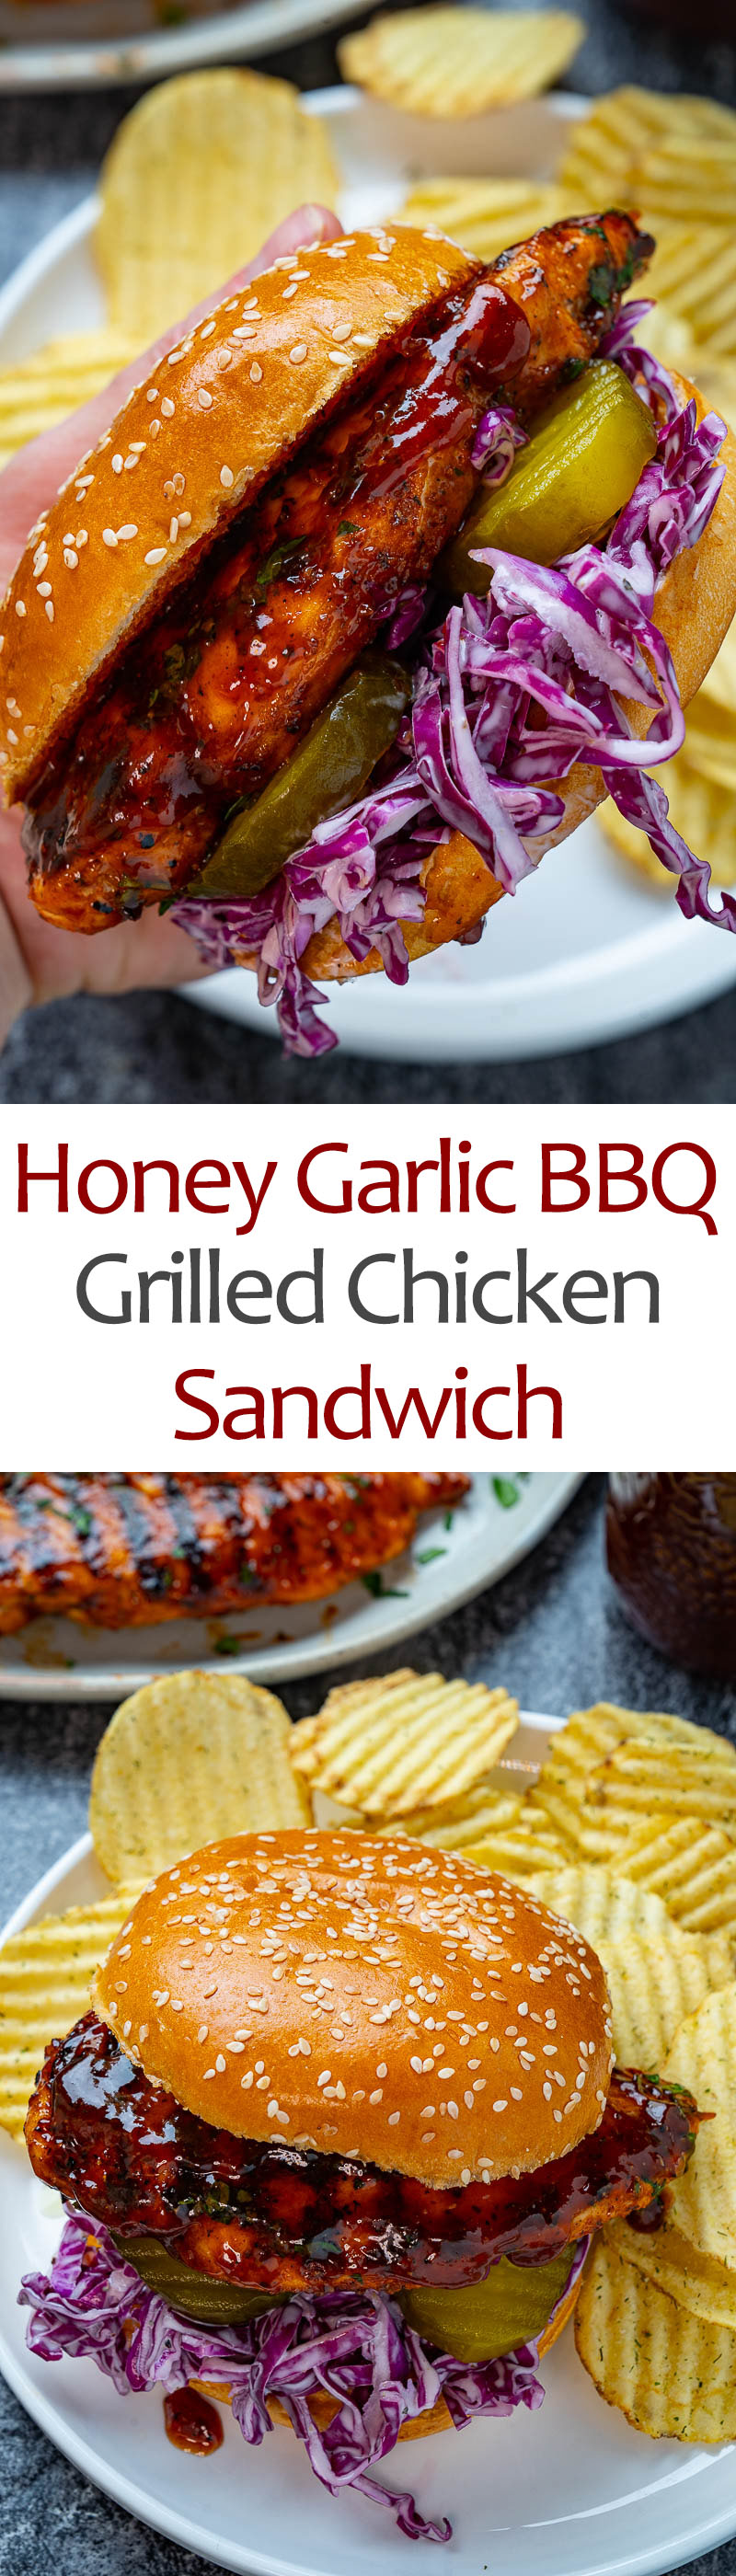 Honey Garlic BBQ Grilled Chicken Sandwich